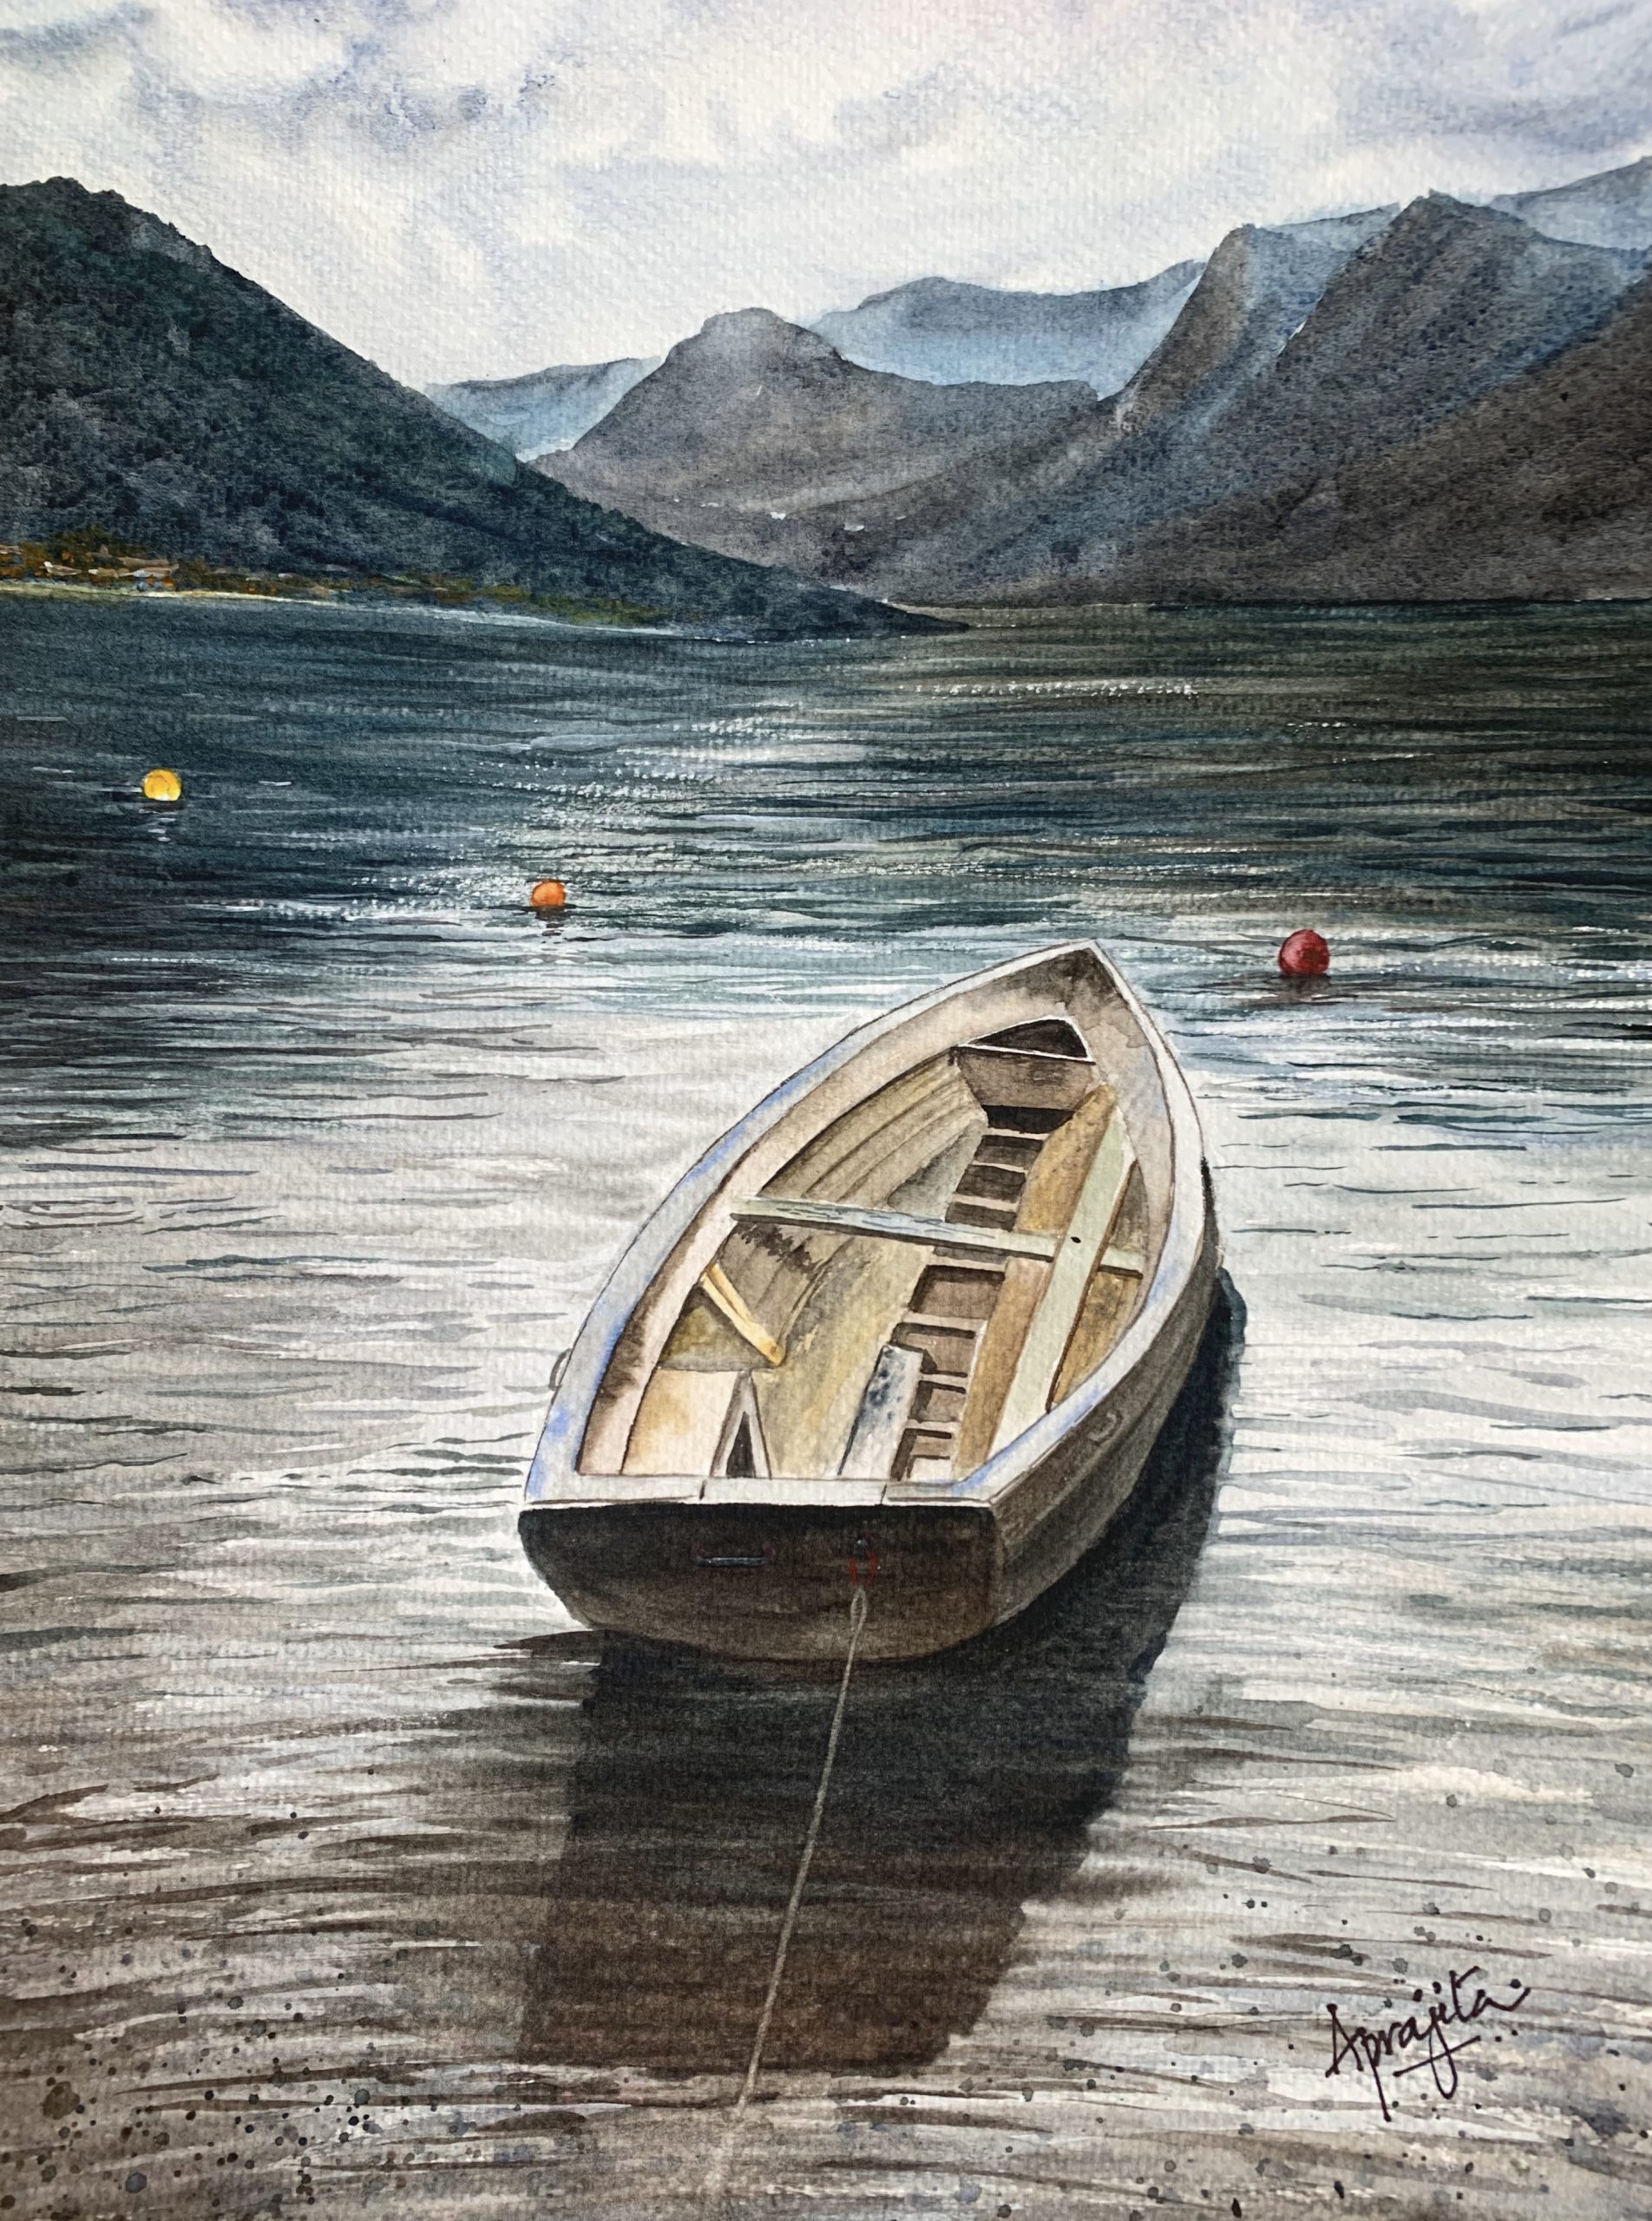 A Boat at Lake Cuomo